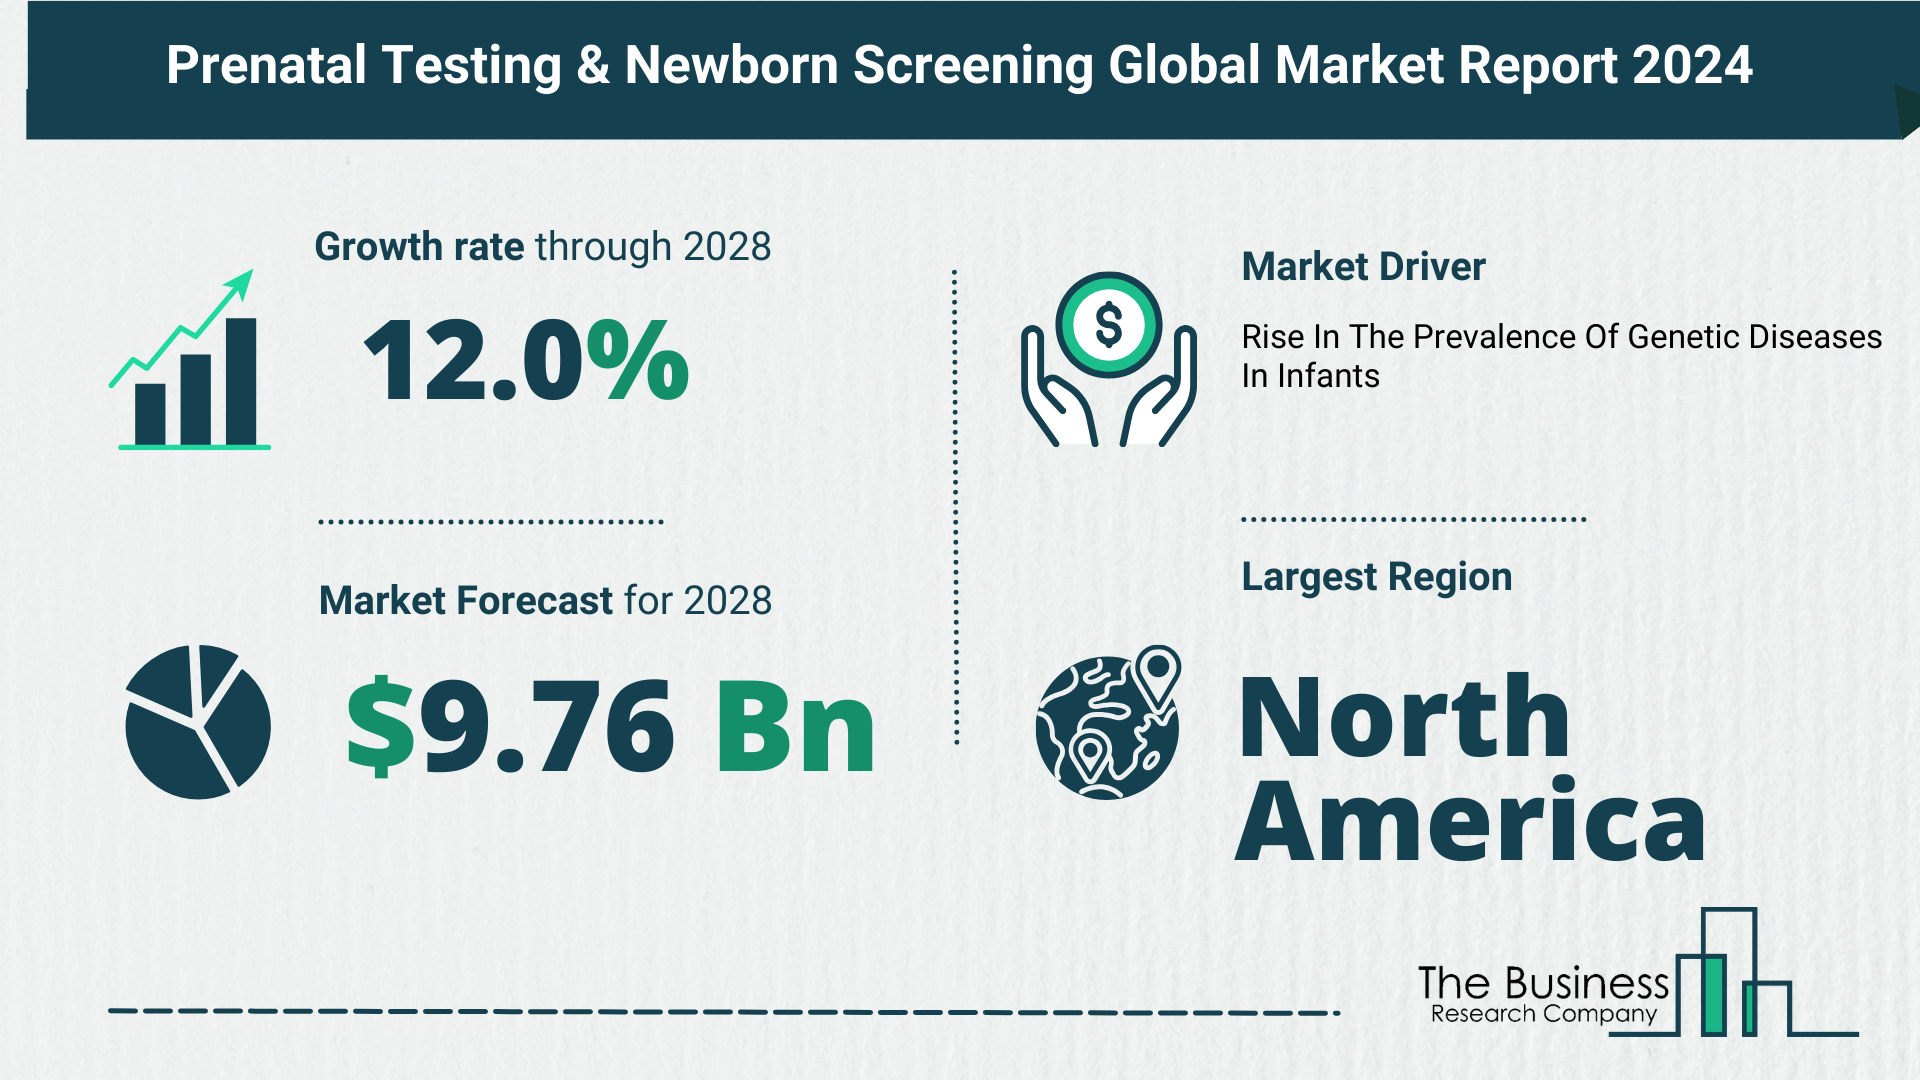 Global Prenatal Testing & Newborn Screening Market